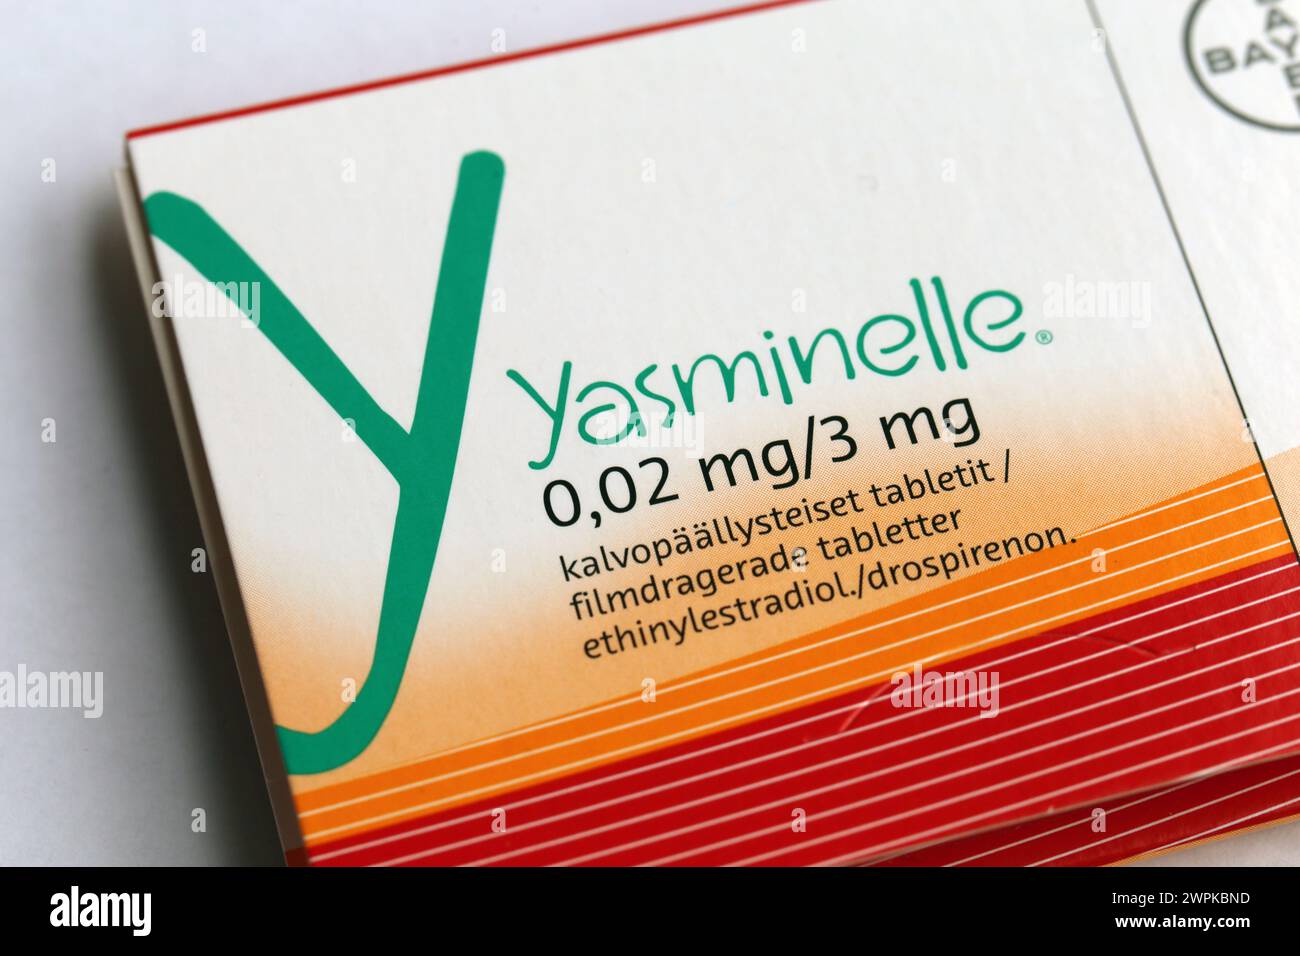 Espoo, Finlandia - aprile 2020: Pillole anticoncezionali di Yasminelle, inclusi estrogeni e progesteroni. Queste pillole possono prevenire la gravidanza indesiderata. Foto Stock